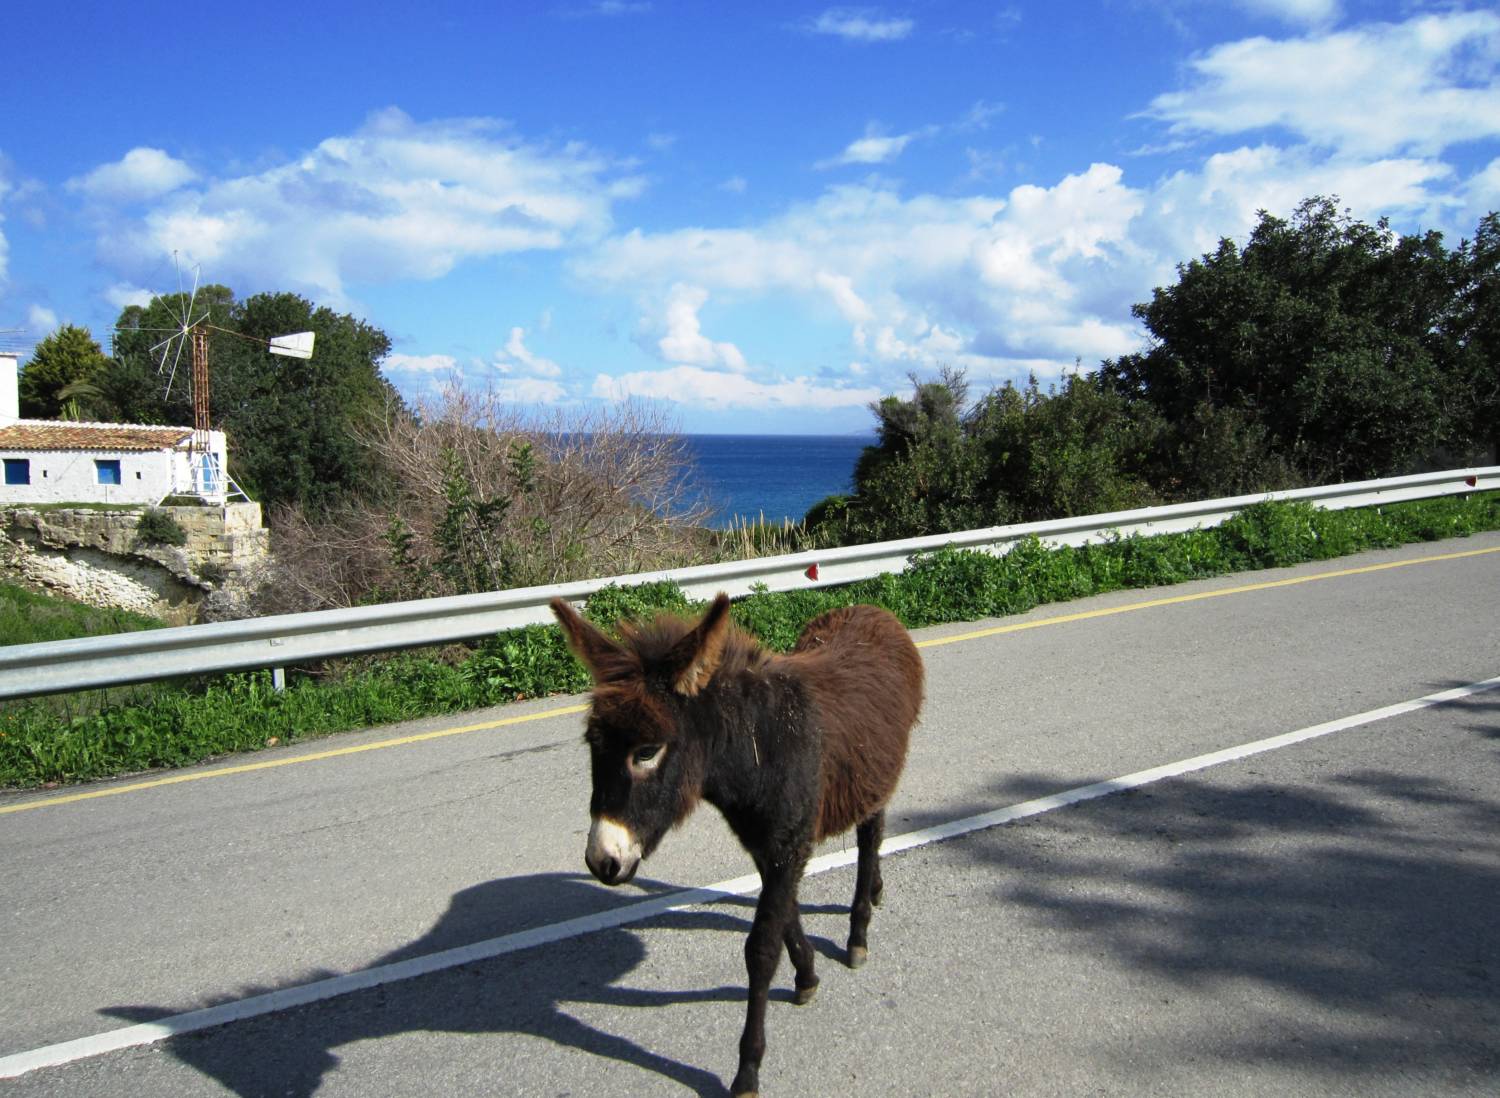 Wild Donkeys On Cyprus